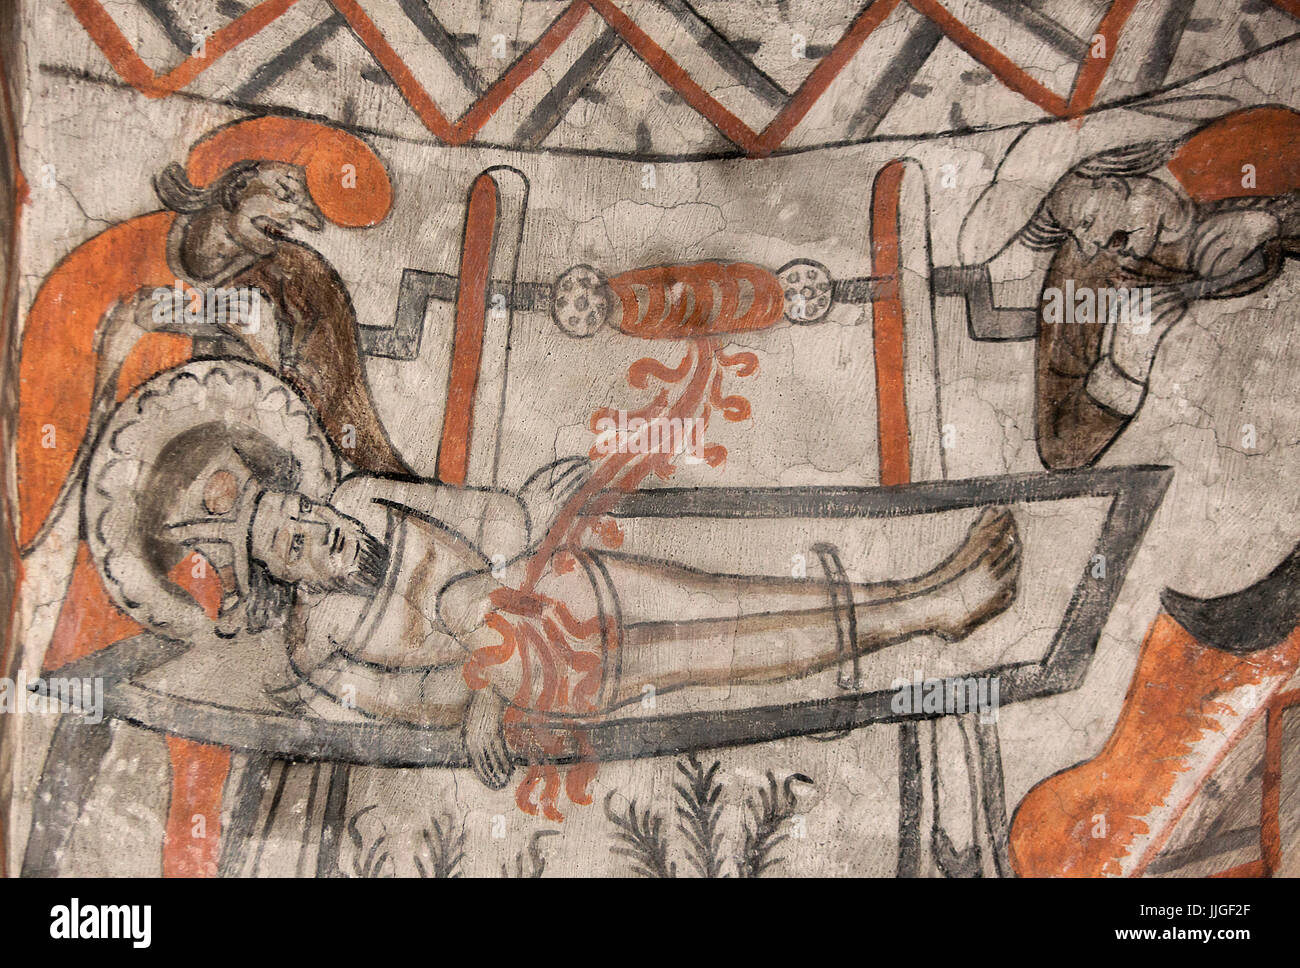 Fresque religieuse médiévale danois au 13ème siècle de style gothique Église Utiliser représentant une scène de torture par le maître de l'année autour d'Isefjord 1475 UN Banque D'Images